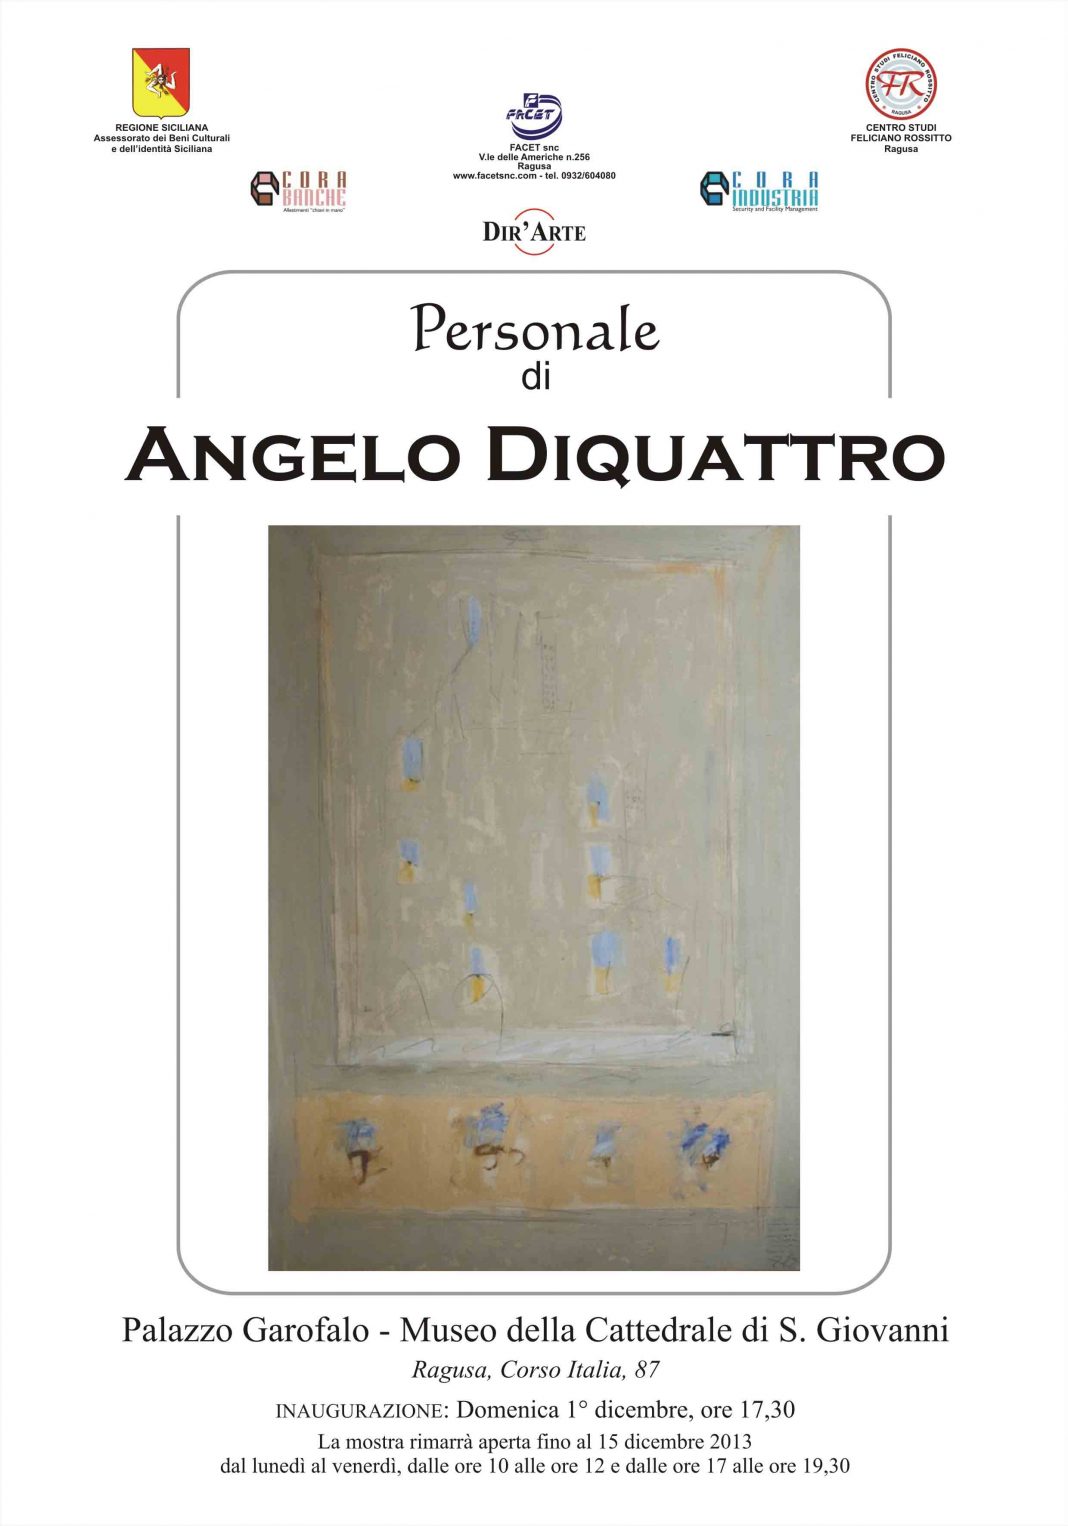 Angelo di Quattrohttps://www.exibart.com/repository/media/eventi/2013/11/angelo-di-quattro-1068x1526.jpg